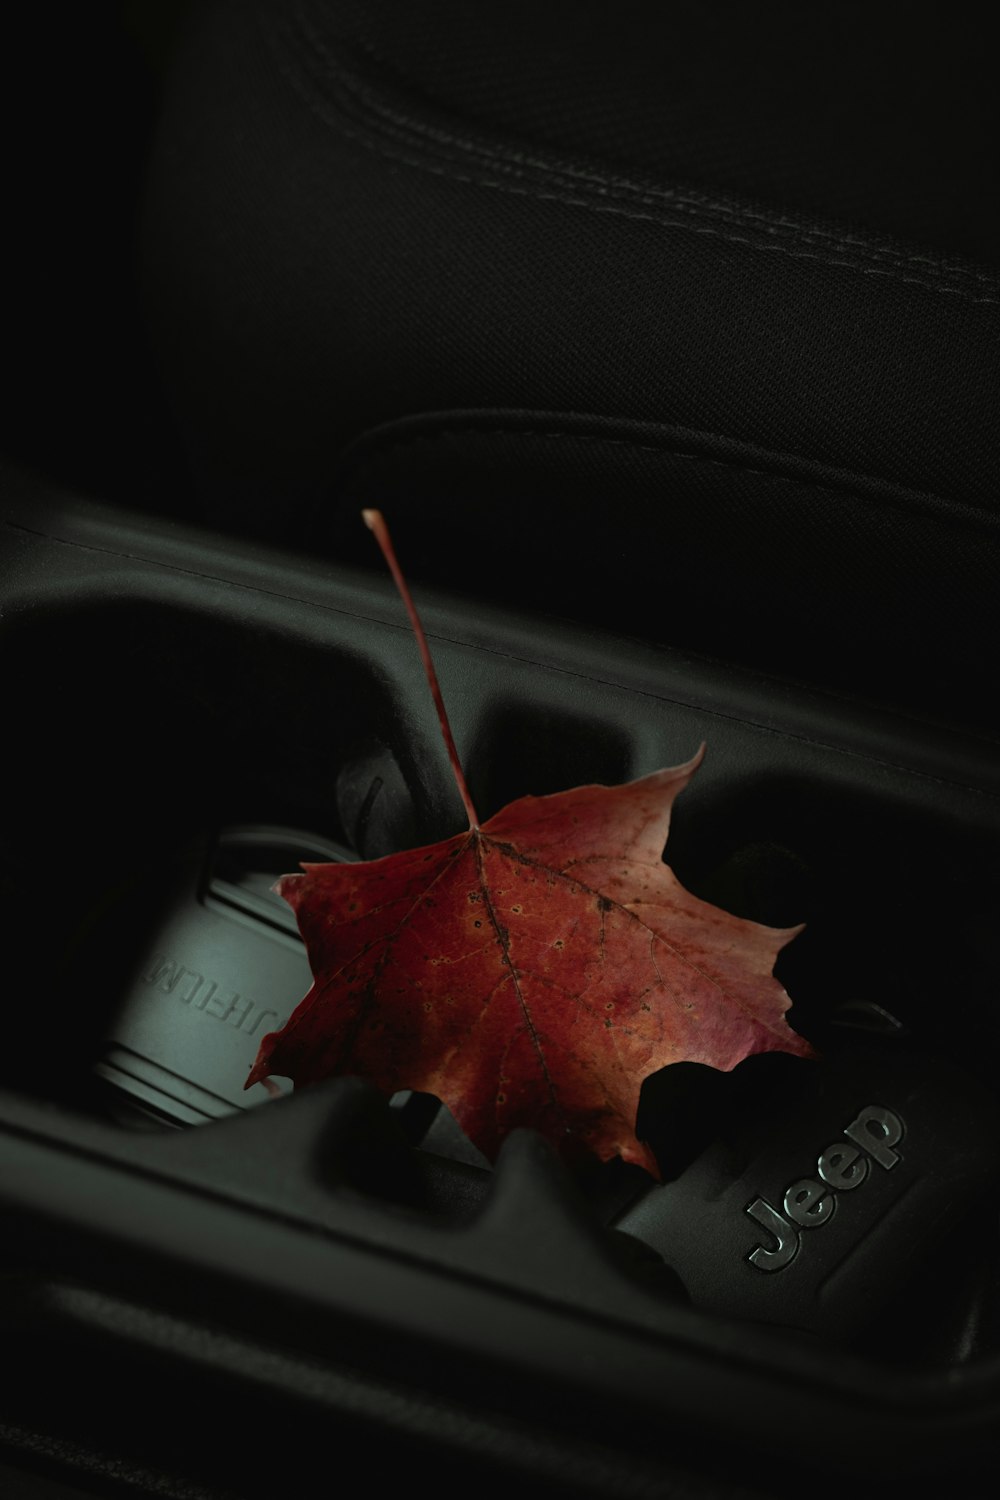 red maple leaf on black car dashboard